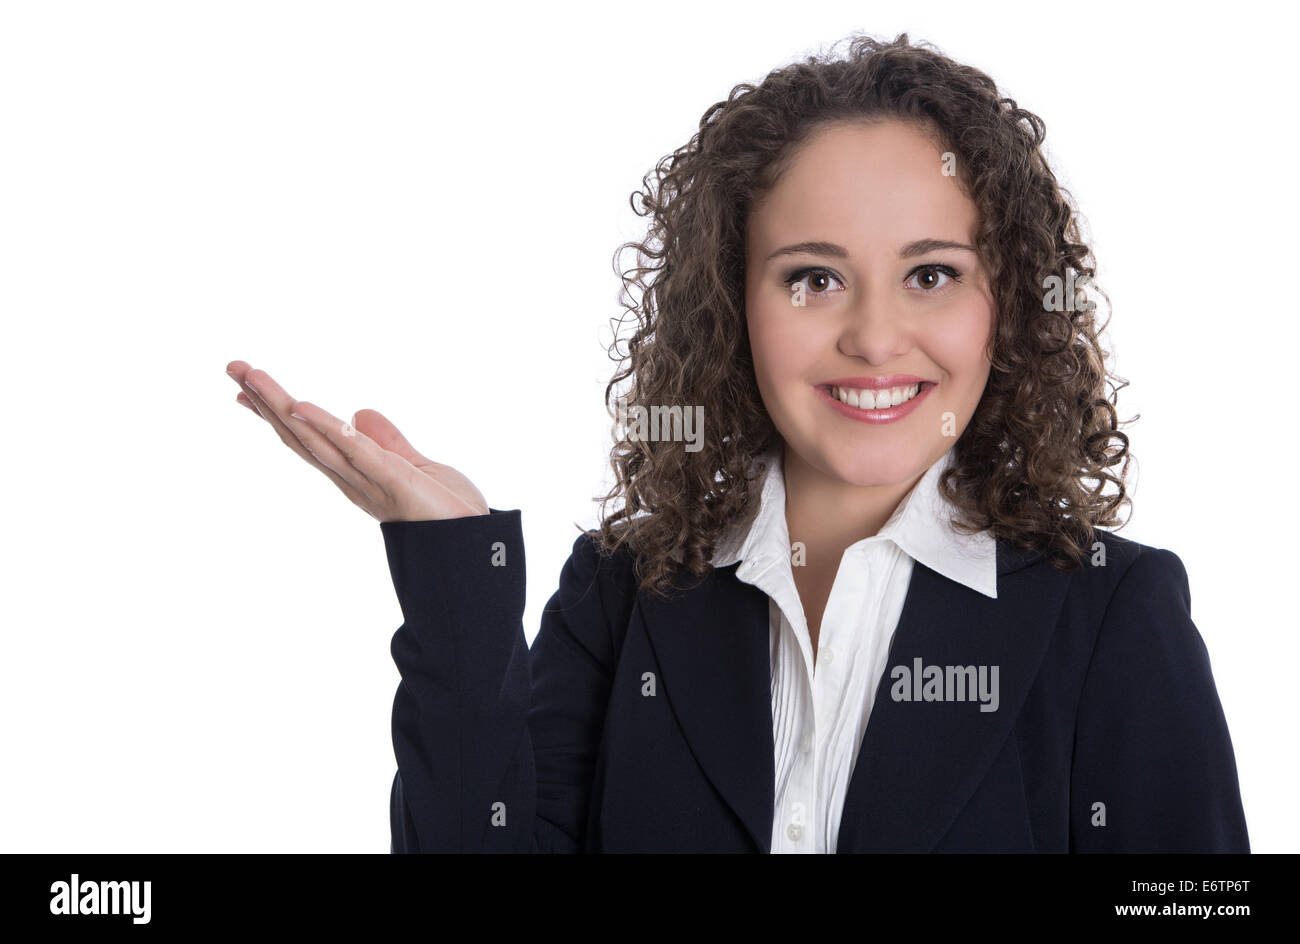 Professional isolato giovane imprenditrice con brunette capelli ricci presentando su sfondo bianco con la mano. Foto Stock